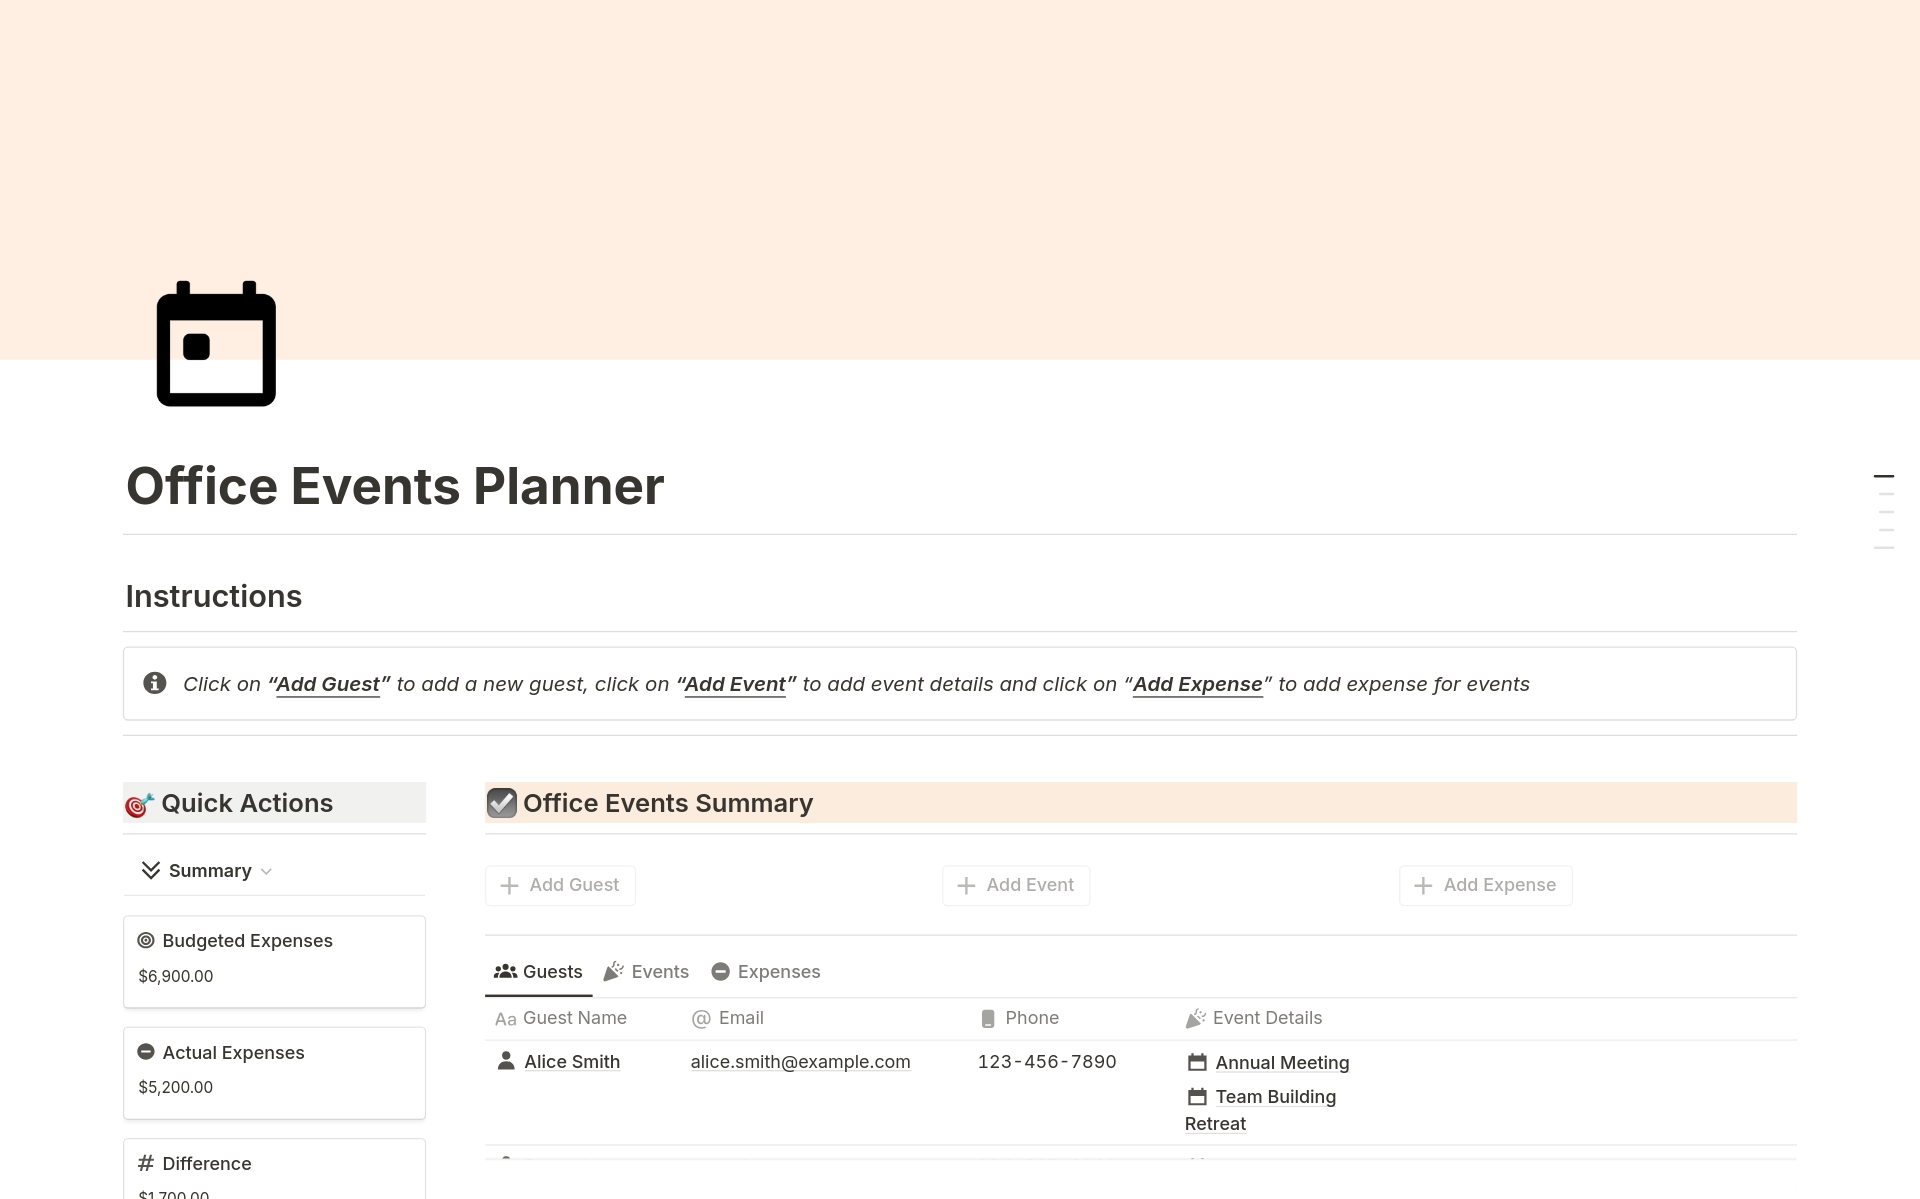 Uma prévia do modelo para Office Events Planner